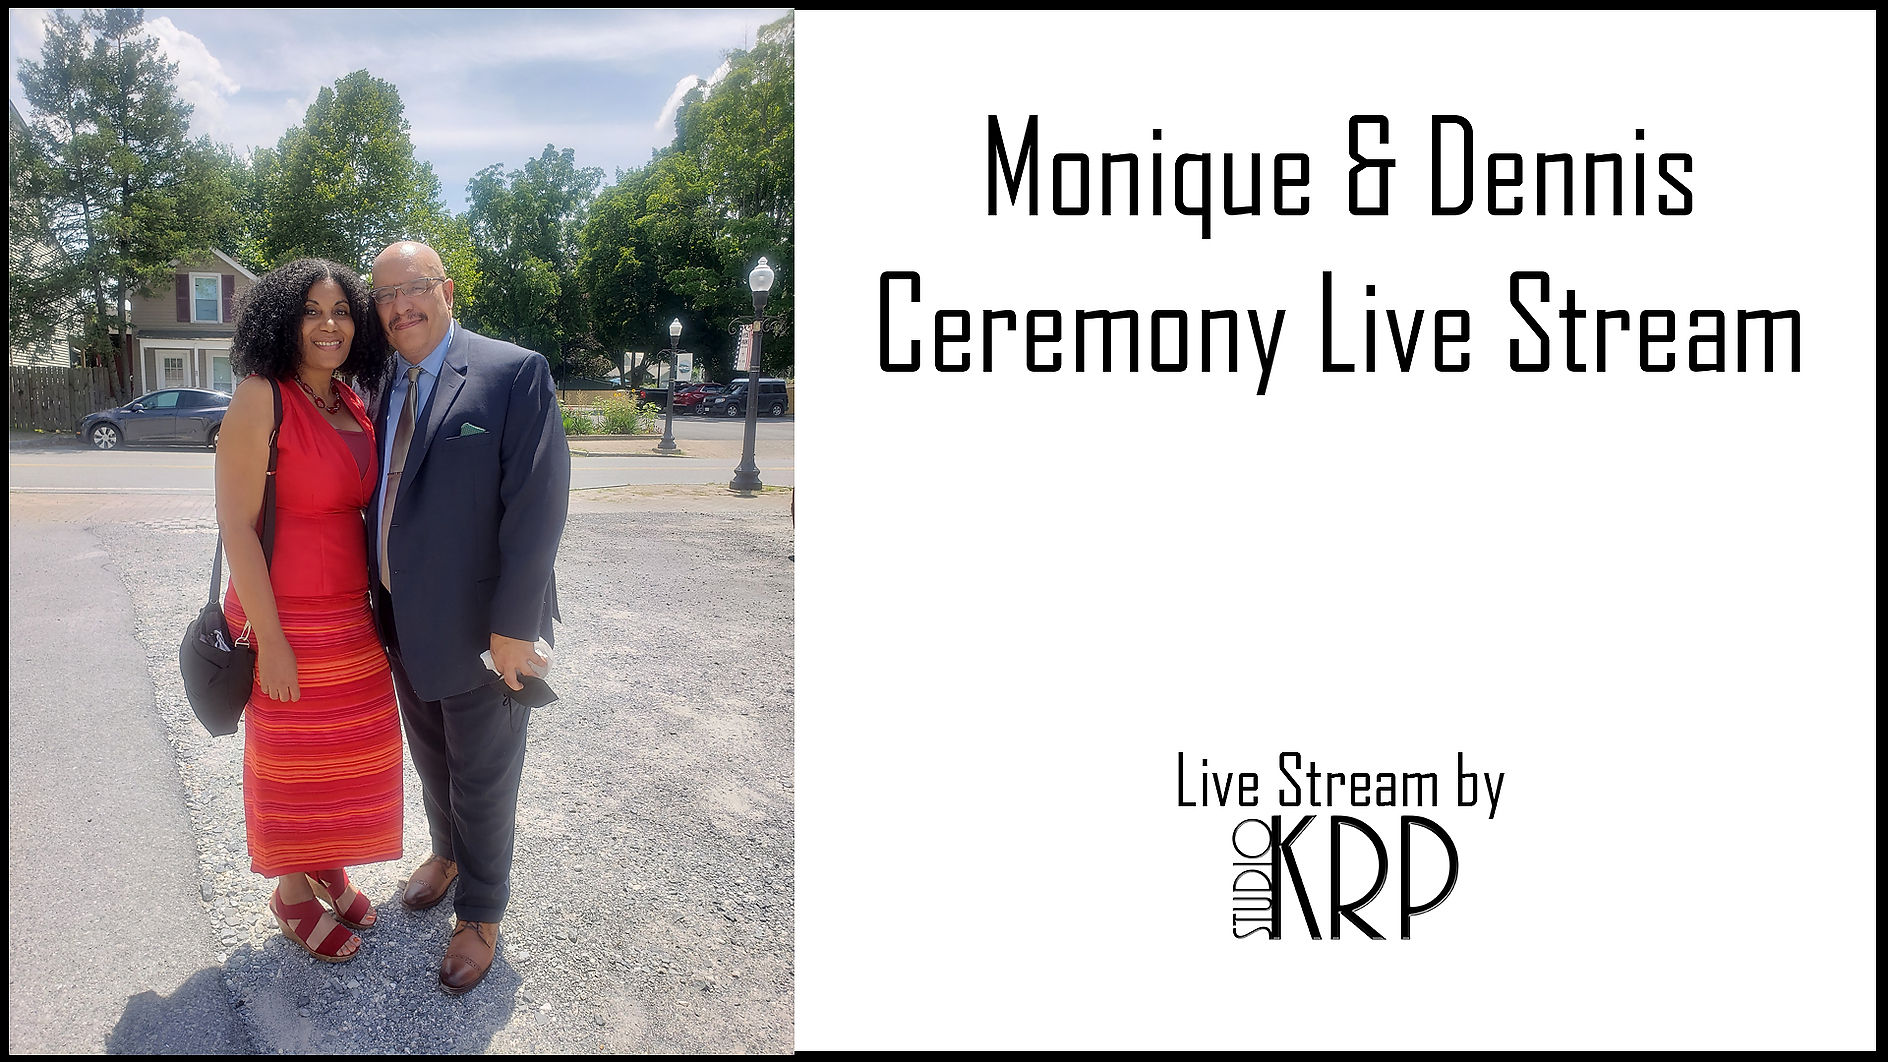 Monique & Dennis Ceremony Live Stream